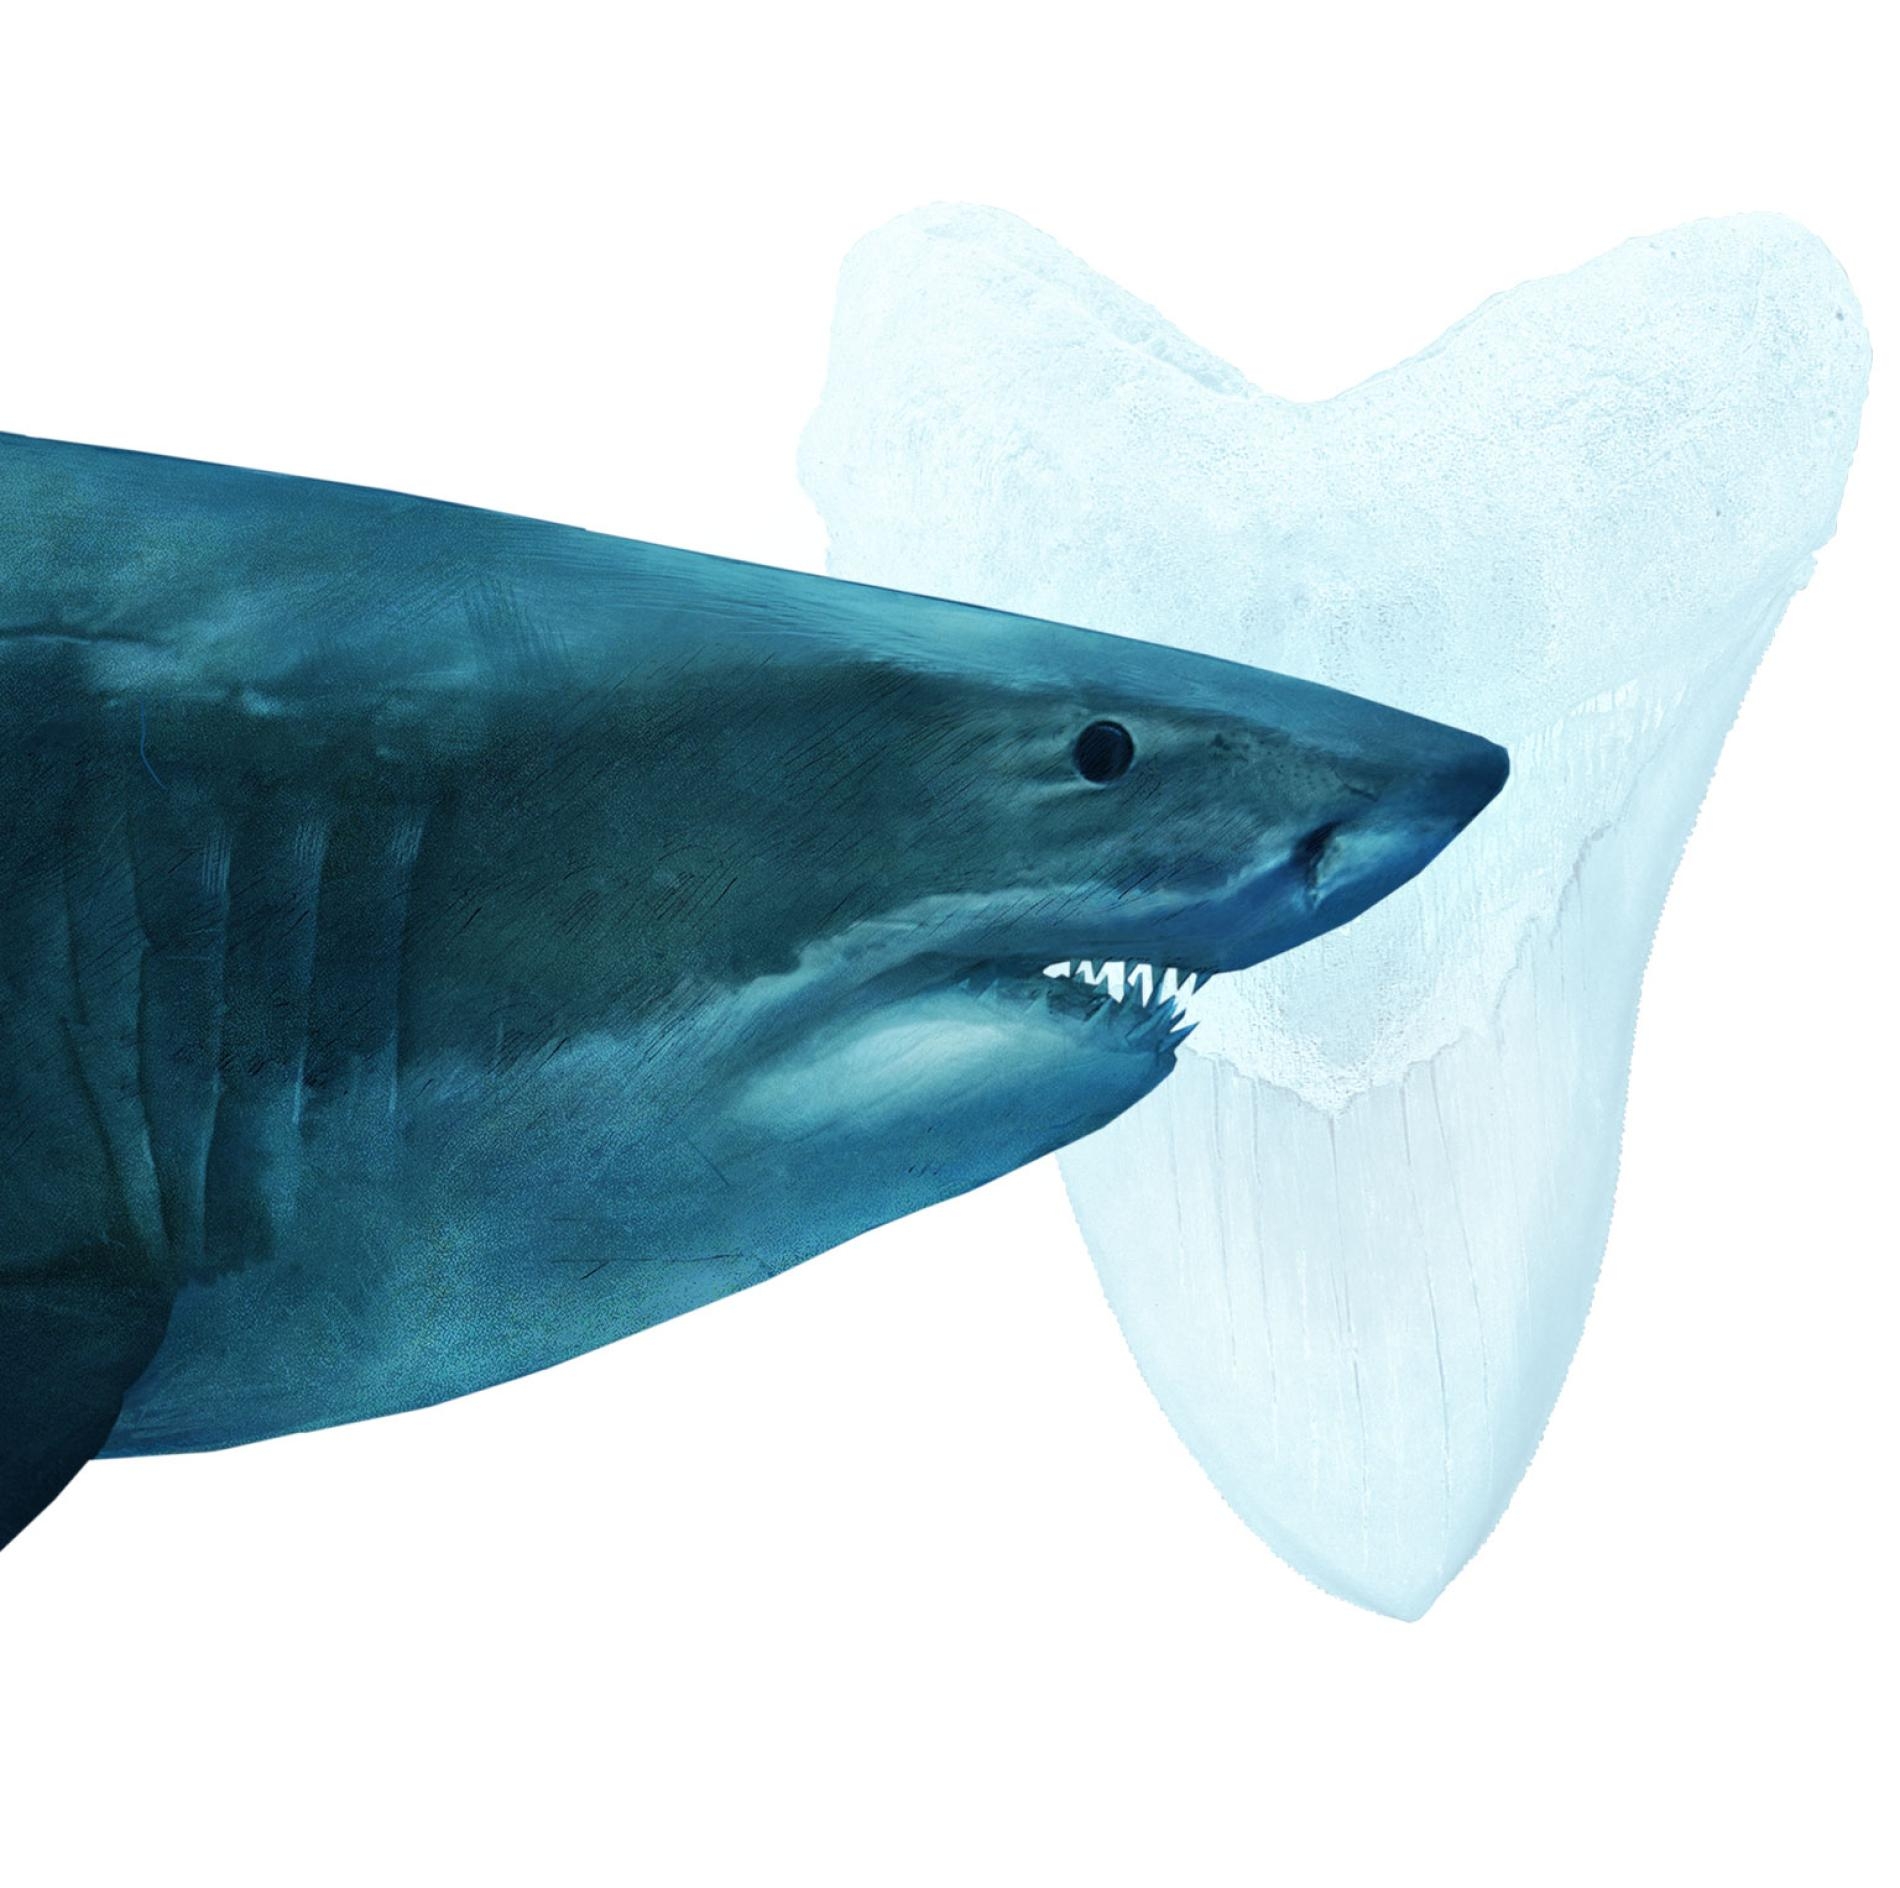 巨齒鯊確定是滅絕了──要怪的可能就是大白鯊- 國家地理雜誌中文網